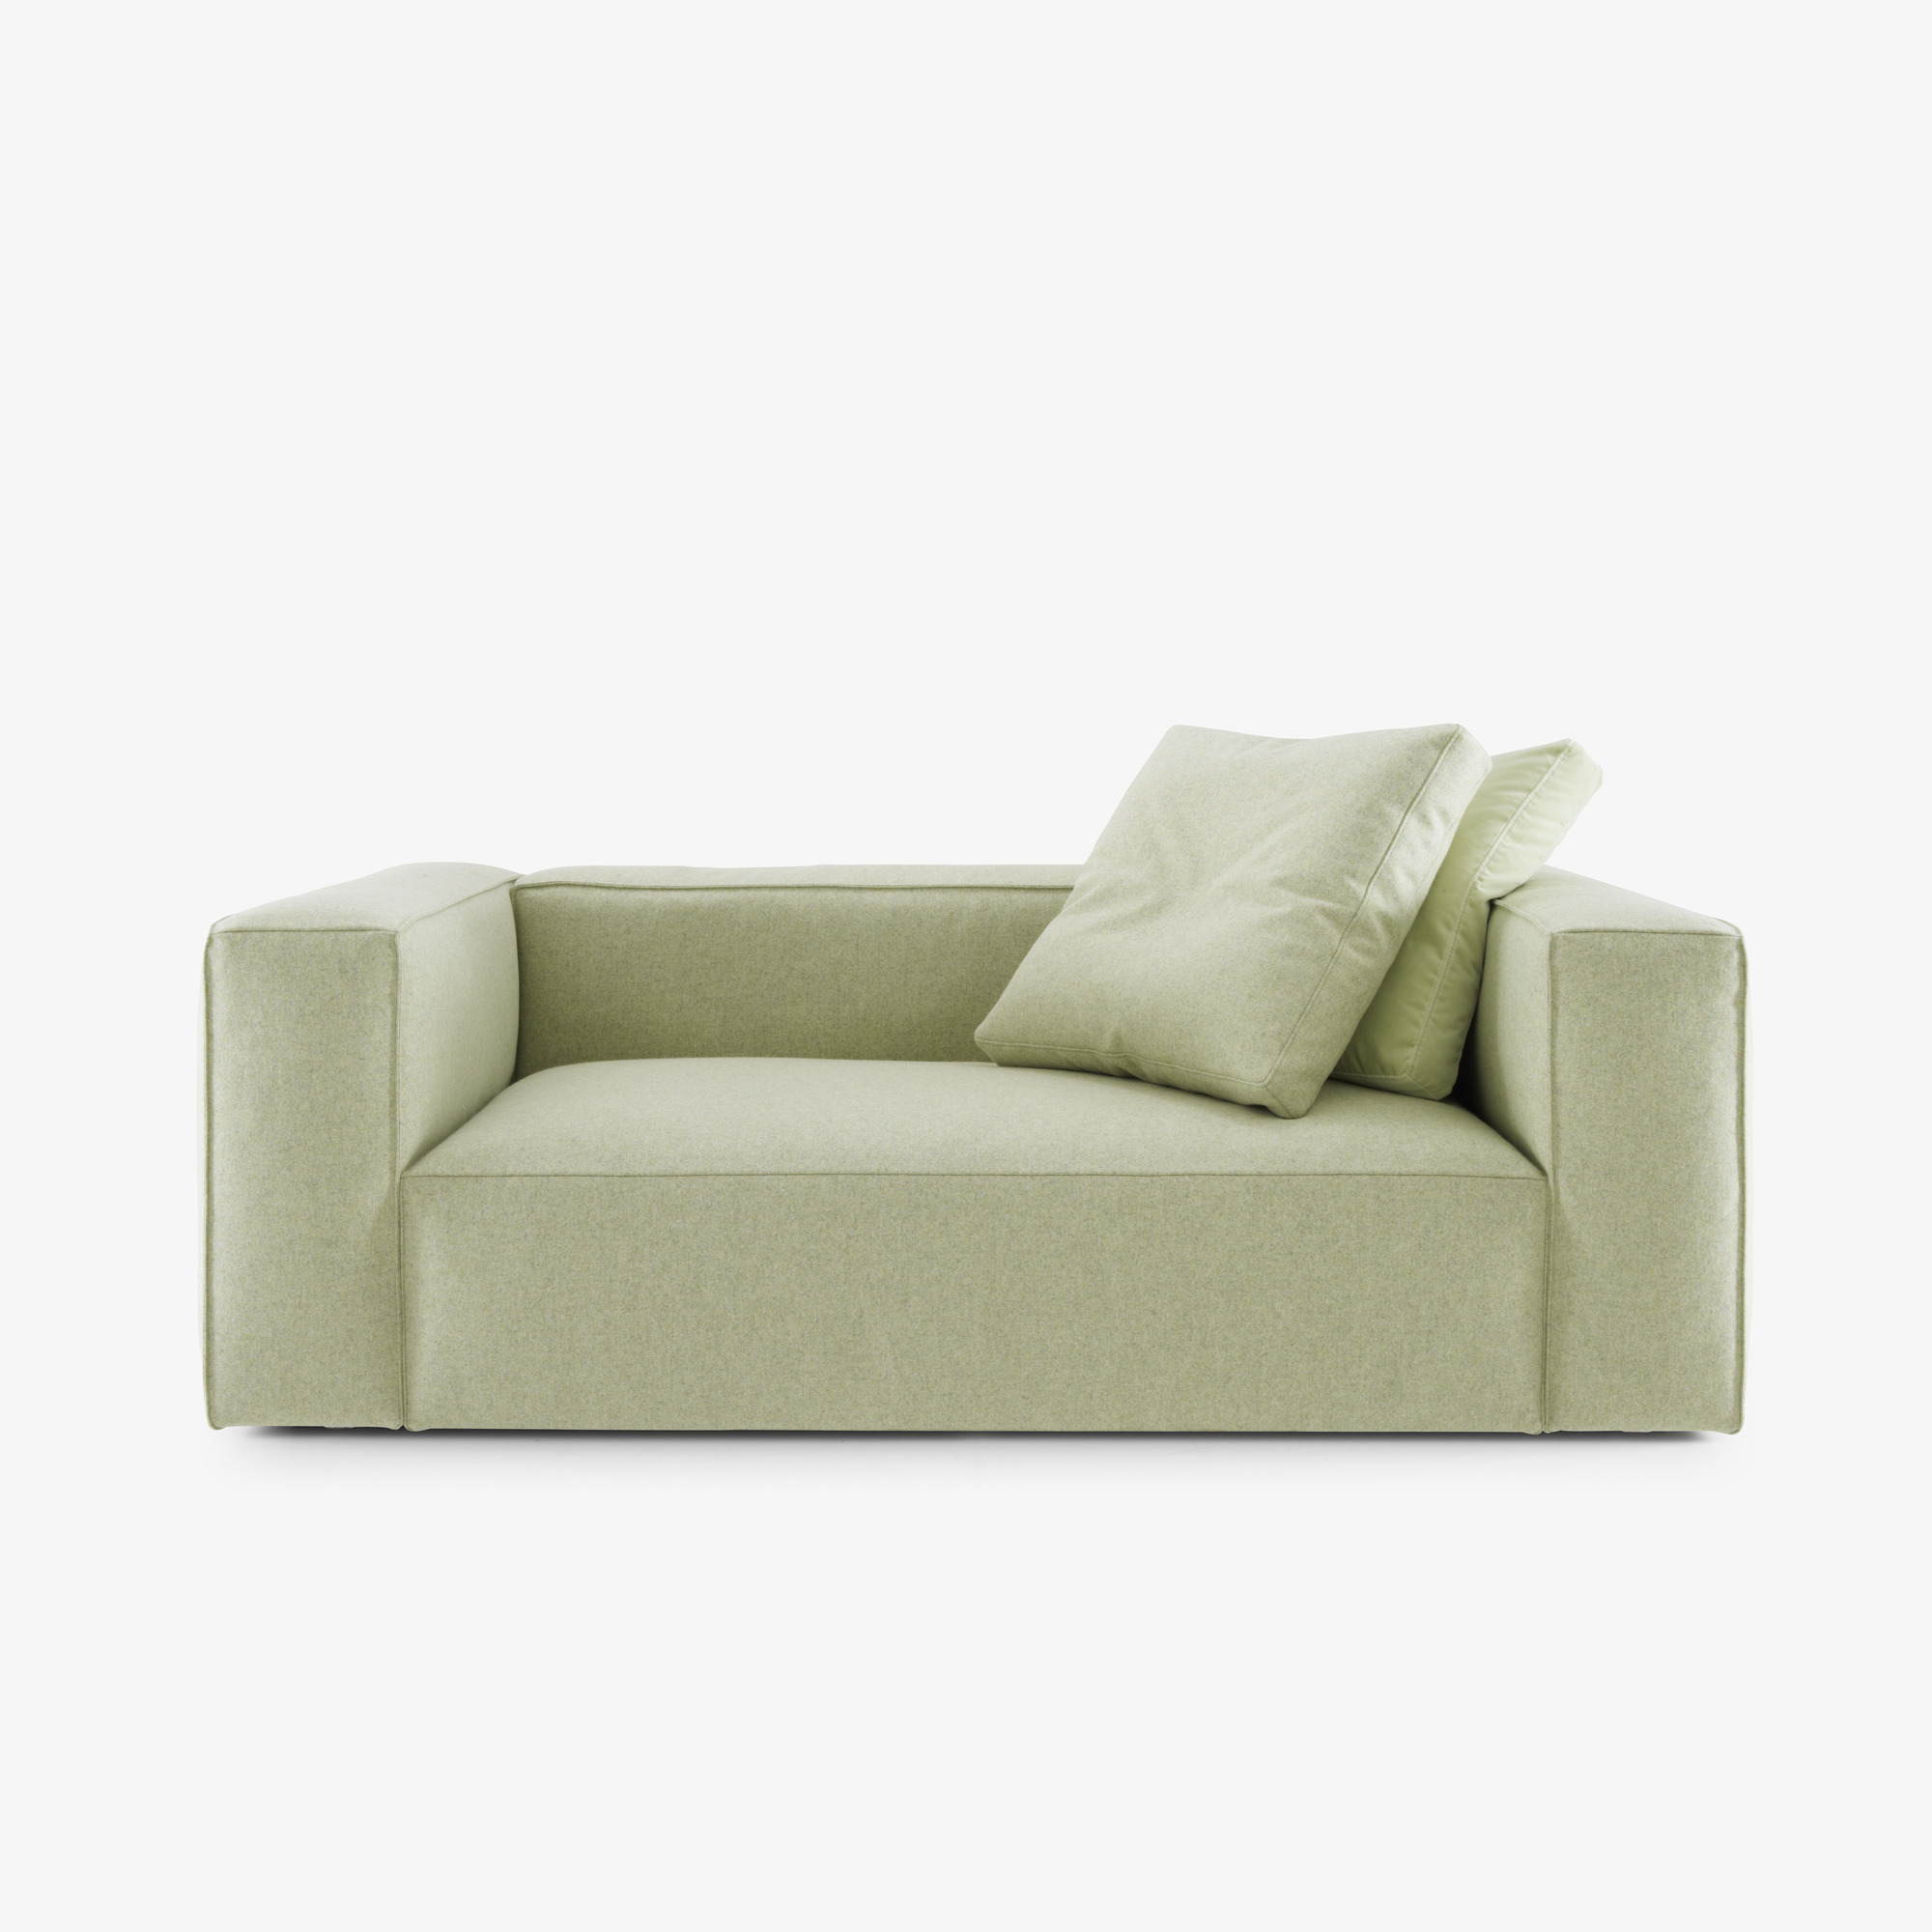 Image Medium sofa complete element  1